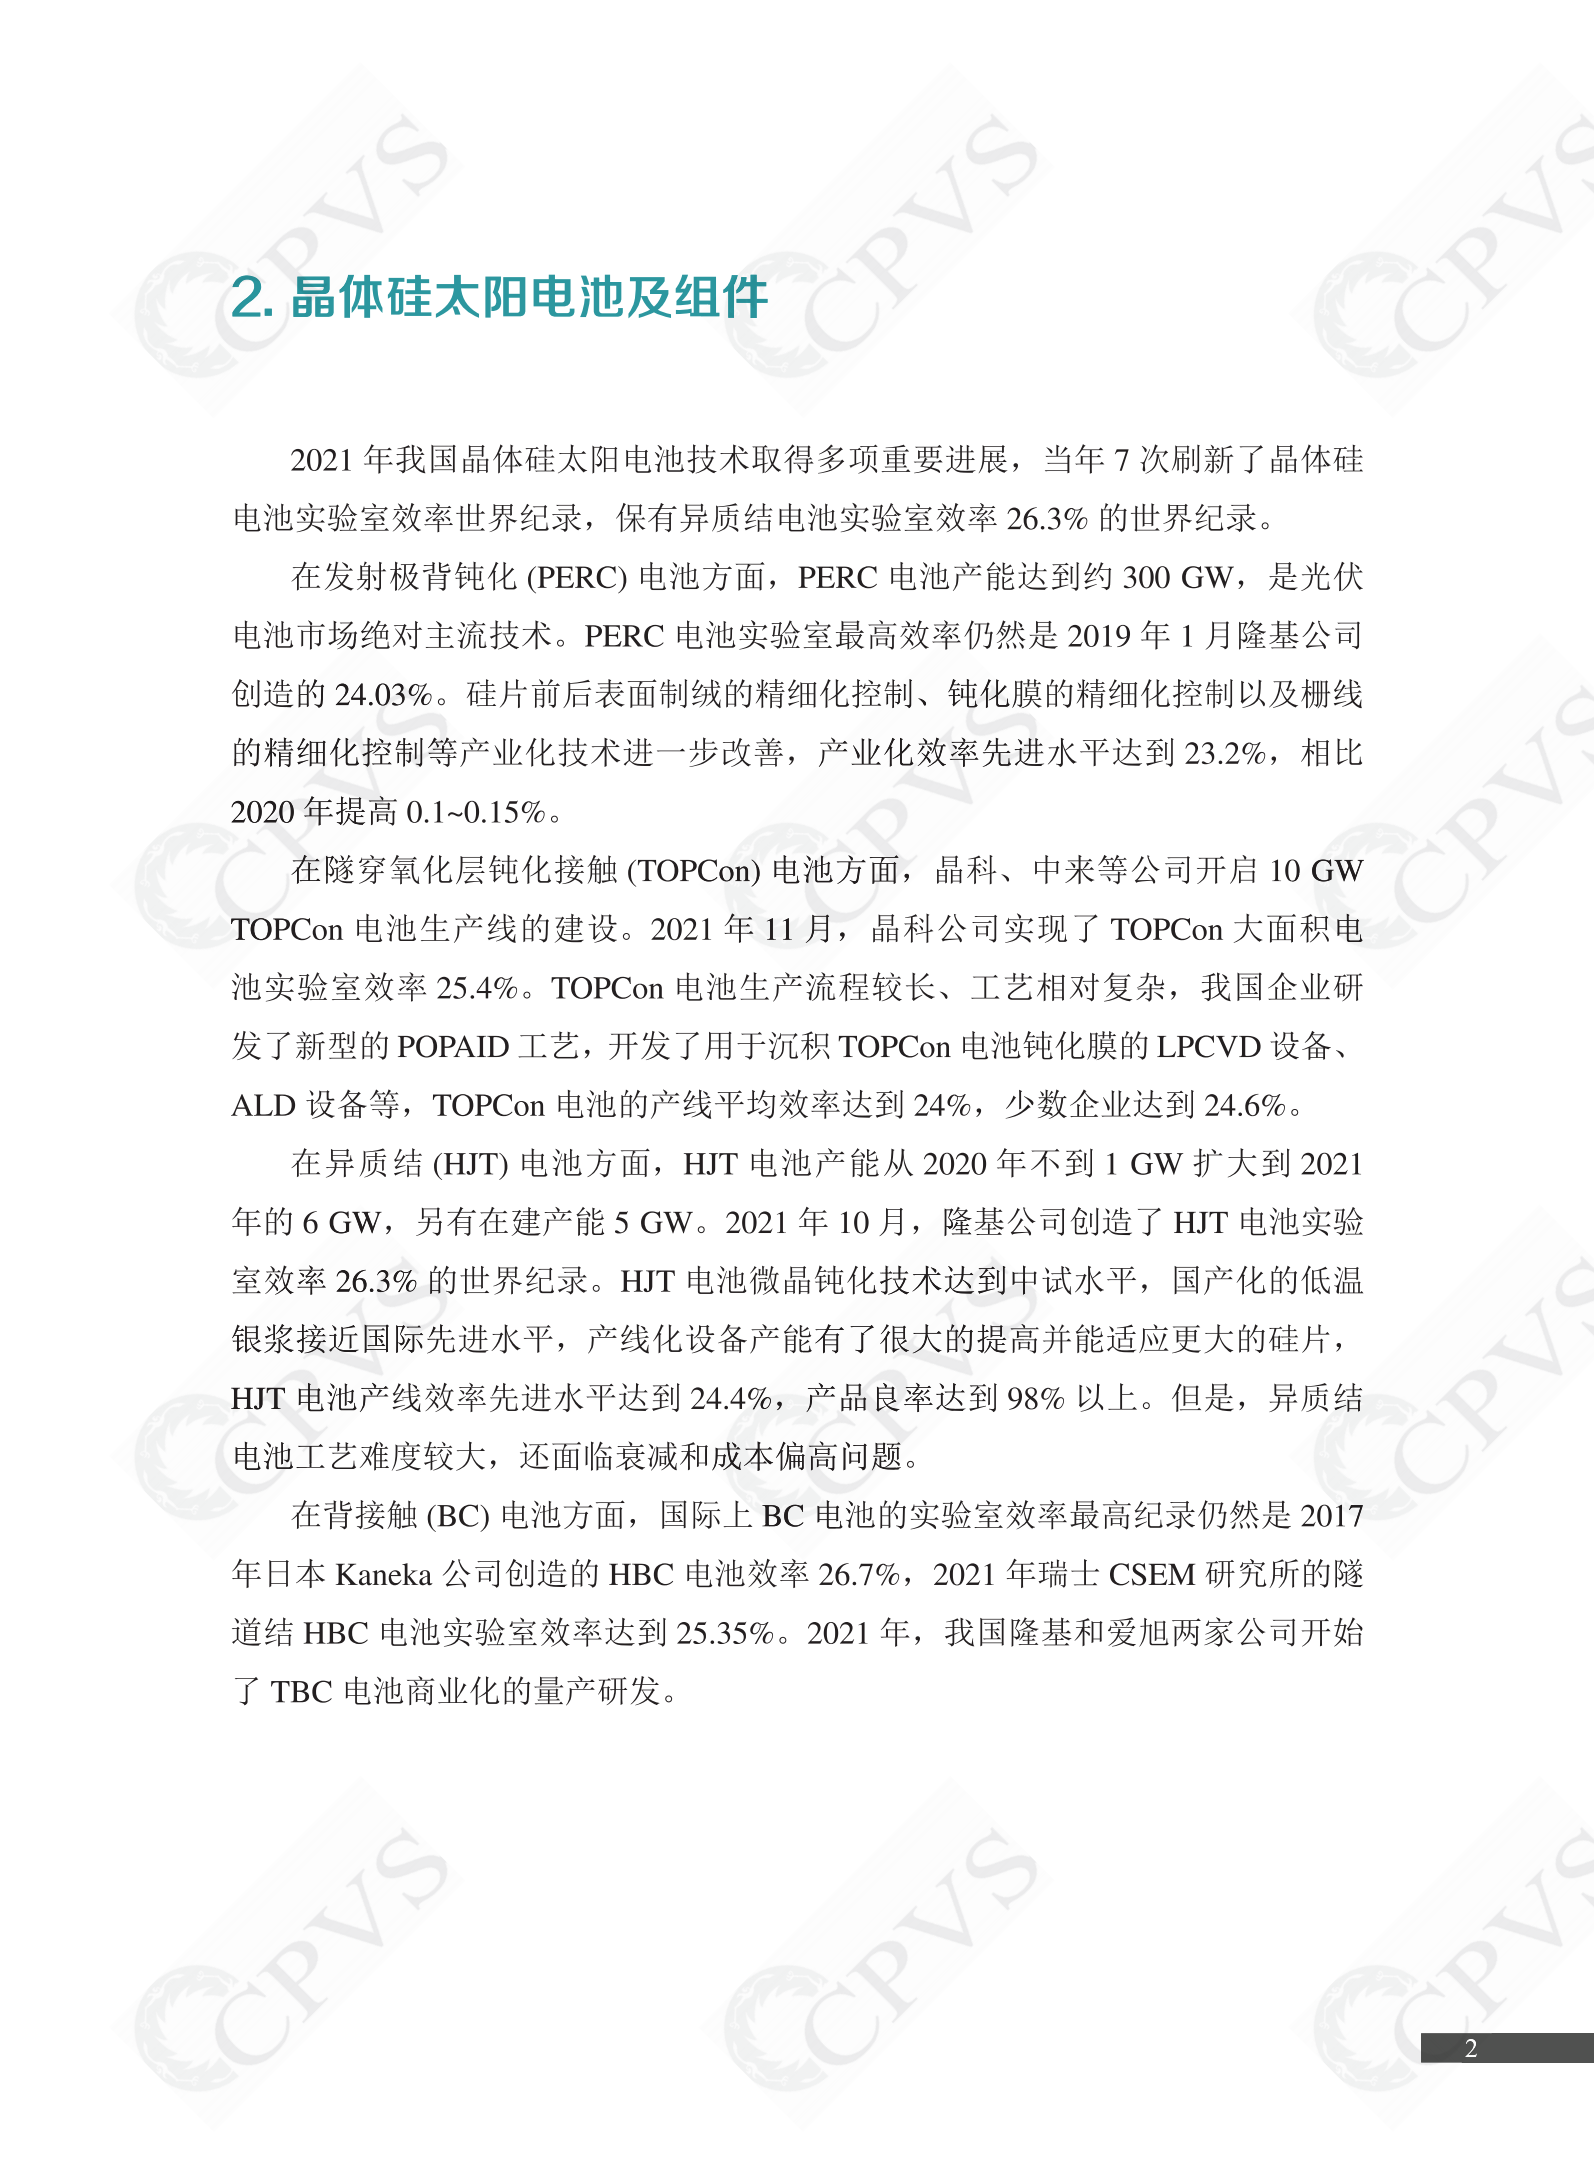 2022年中国光伏技术发展报告简版(1)_05.png